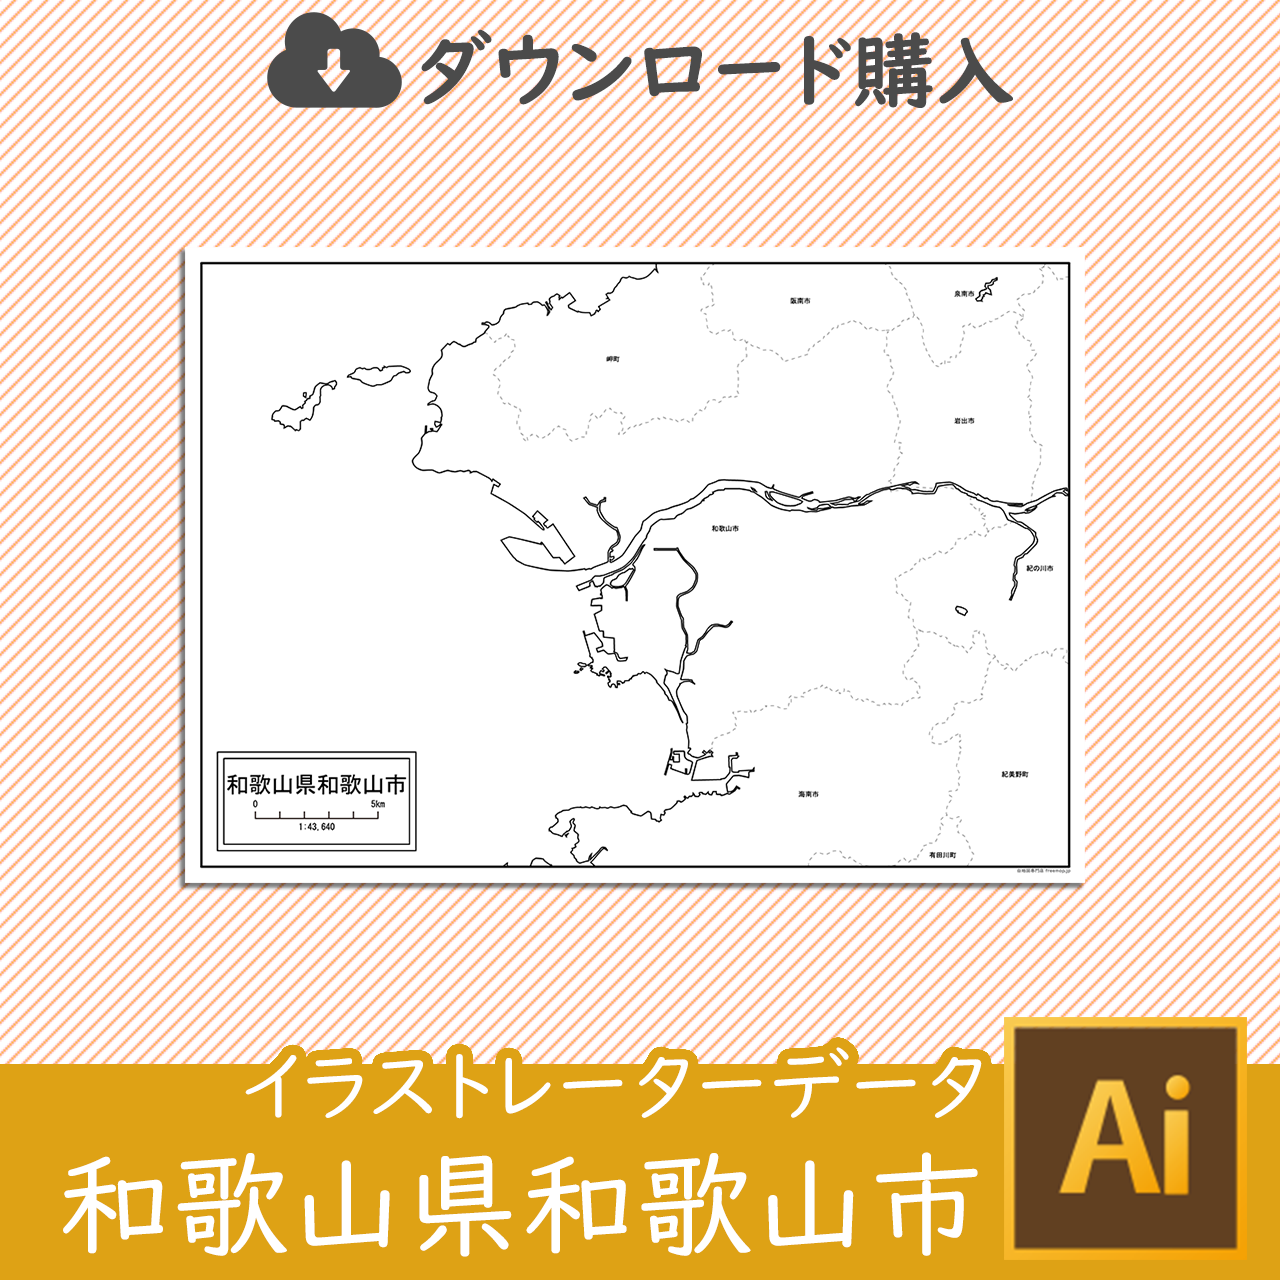 和歌山市のaiデータのサムネイル画像